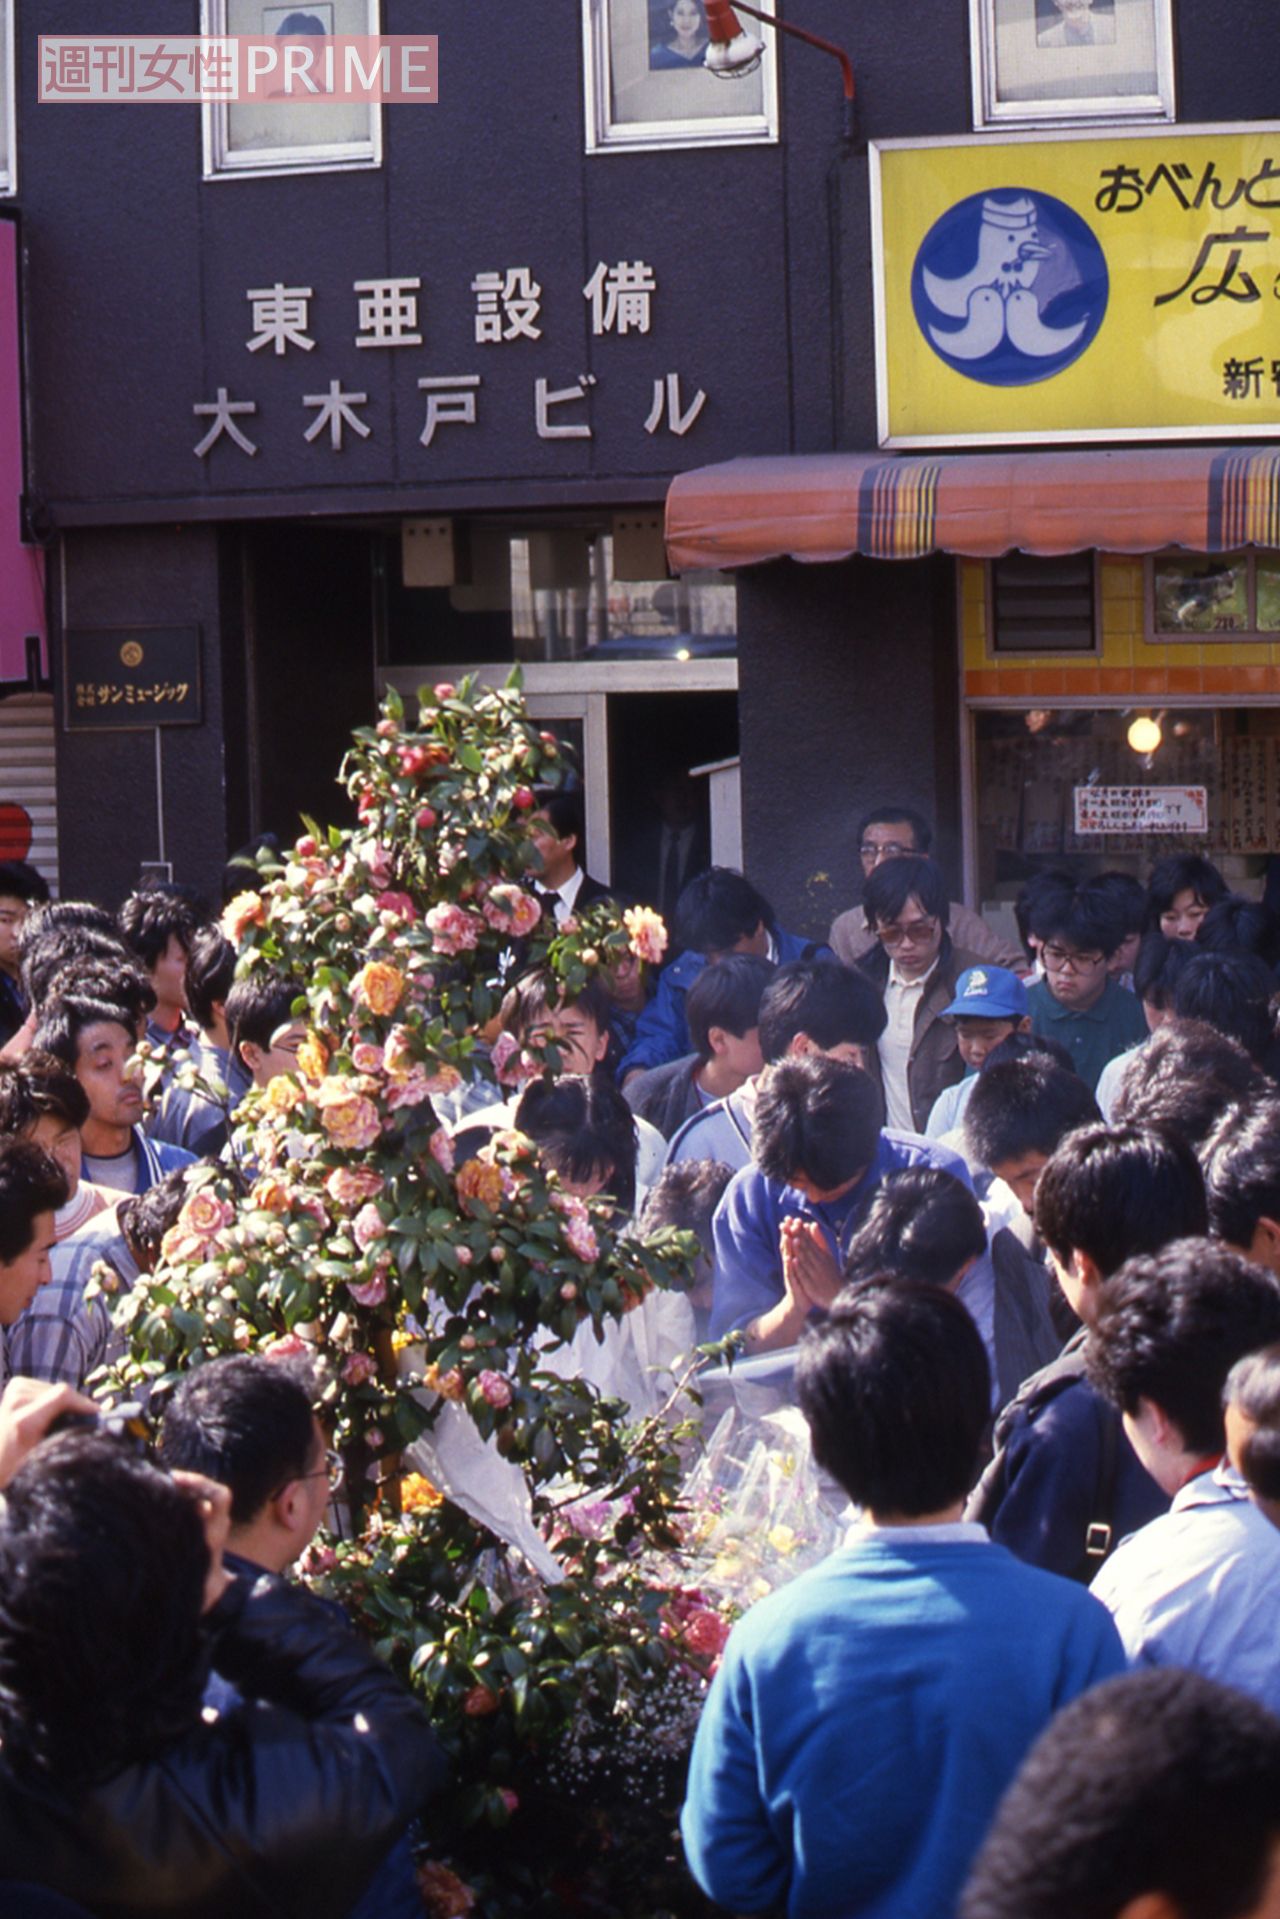 岡田有希子の画像 写真 岡田さんが屋上から身を投げた新宿区四谷のビル 現場には死を悼む人で溢れた 3枚目 週刊女性prime